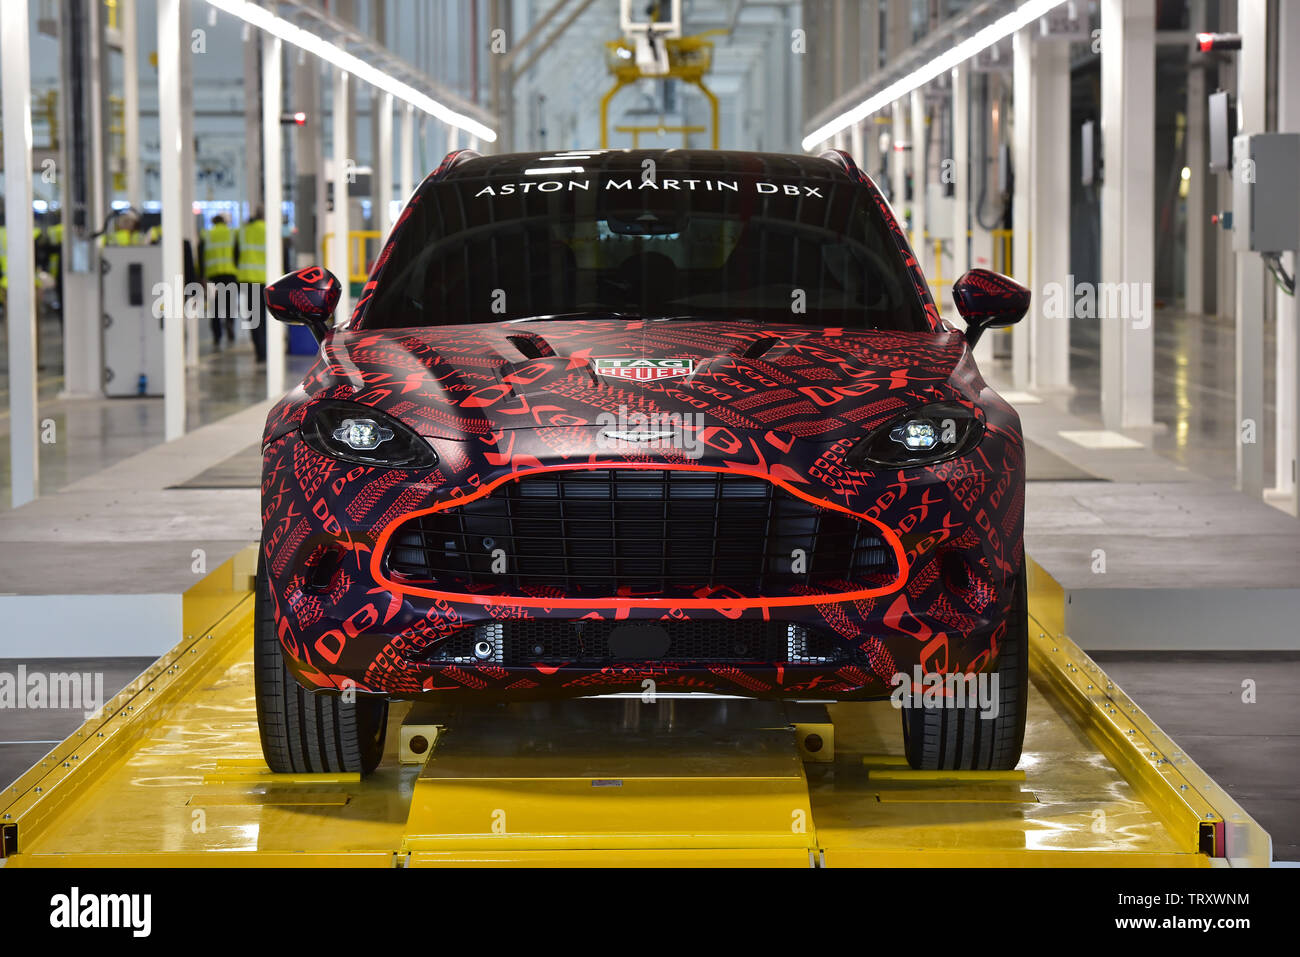 Aston Martin Dbx Stockfotos Und Bilder Kaufen Alamy